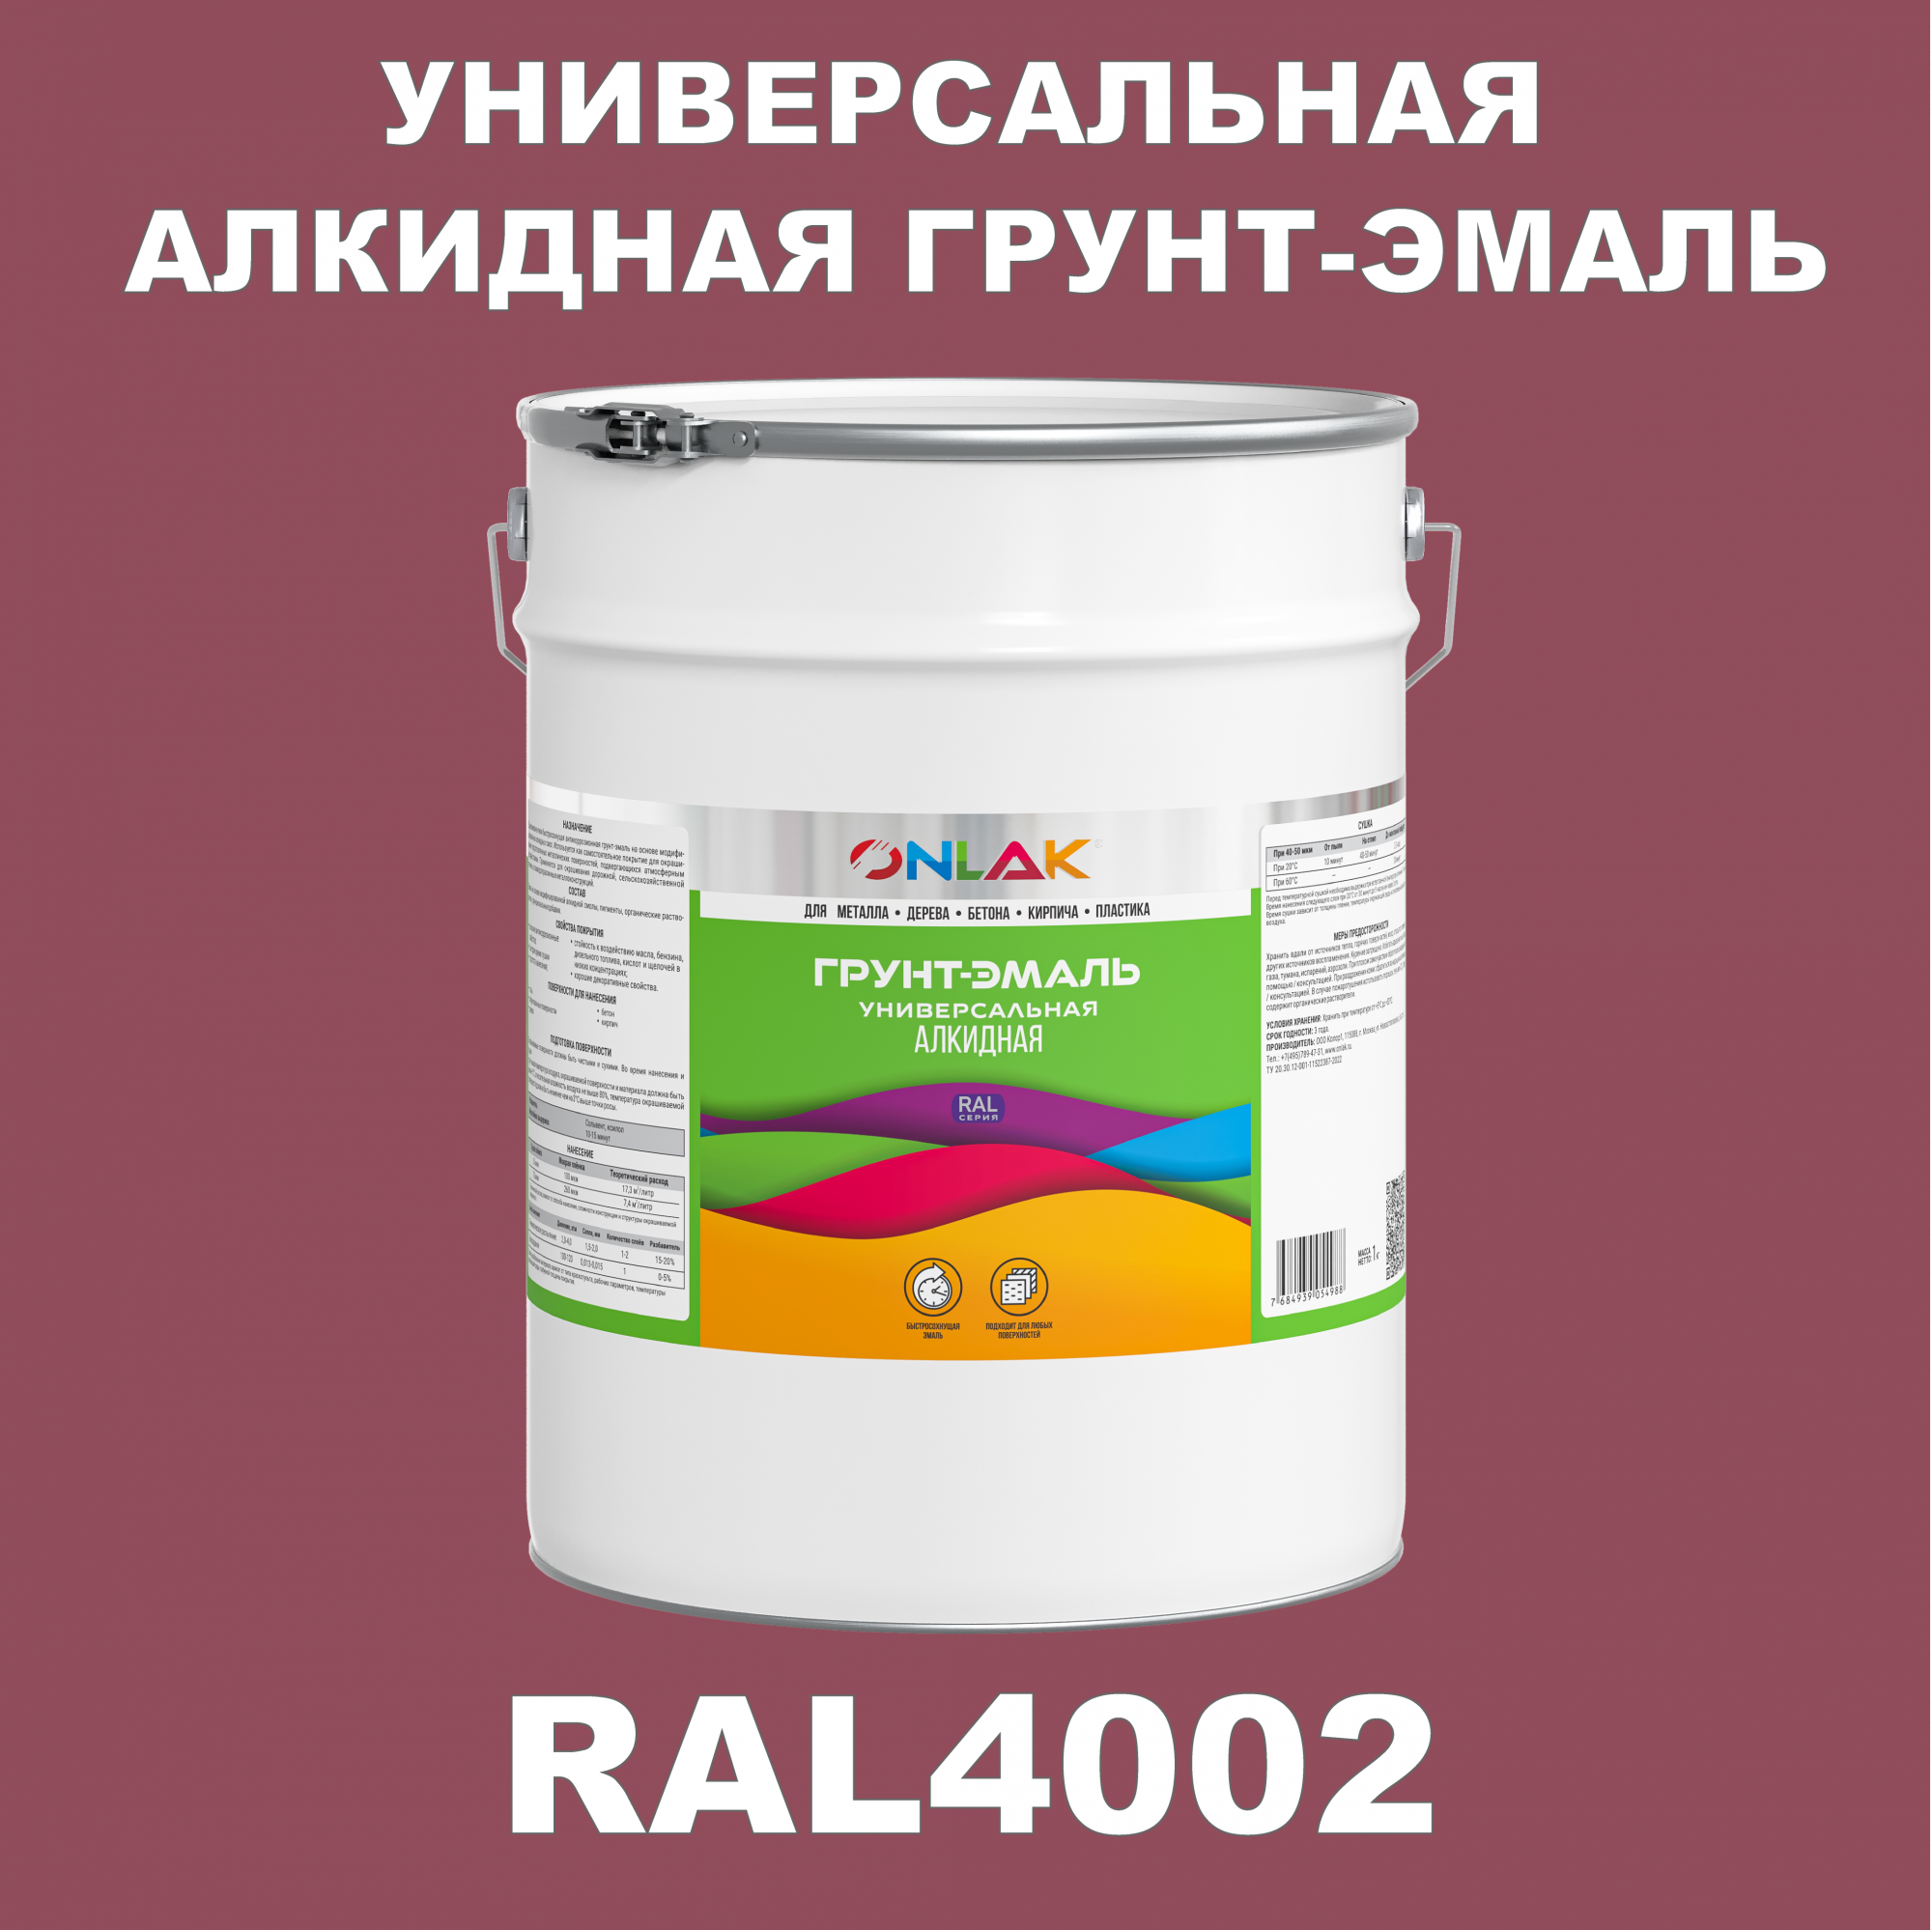 Грунт-эмаль ONLAK 1К RAL4002 антикоррозионная алкидная по металлу по ржавчине 20 кг антикоррозионная грунт эмаль onlak ral 4009 фиолетовый 593 мл